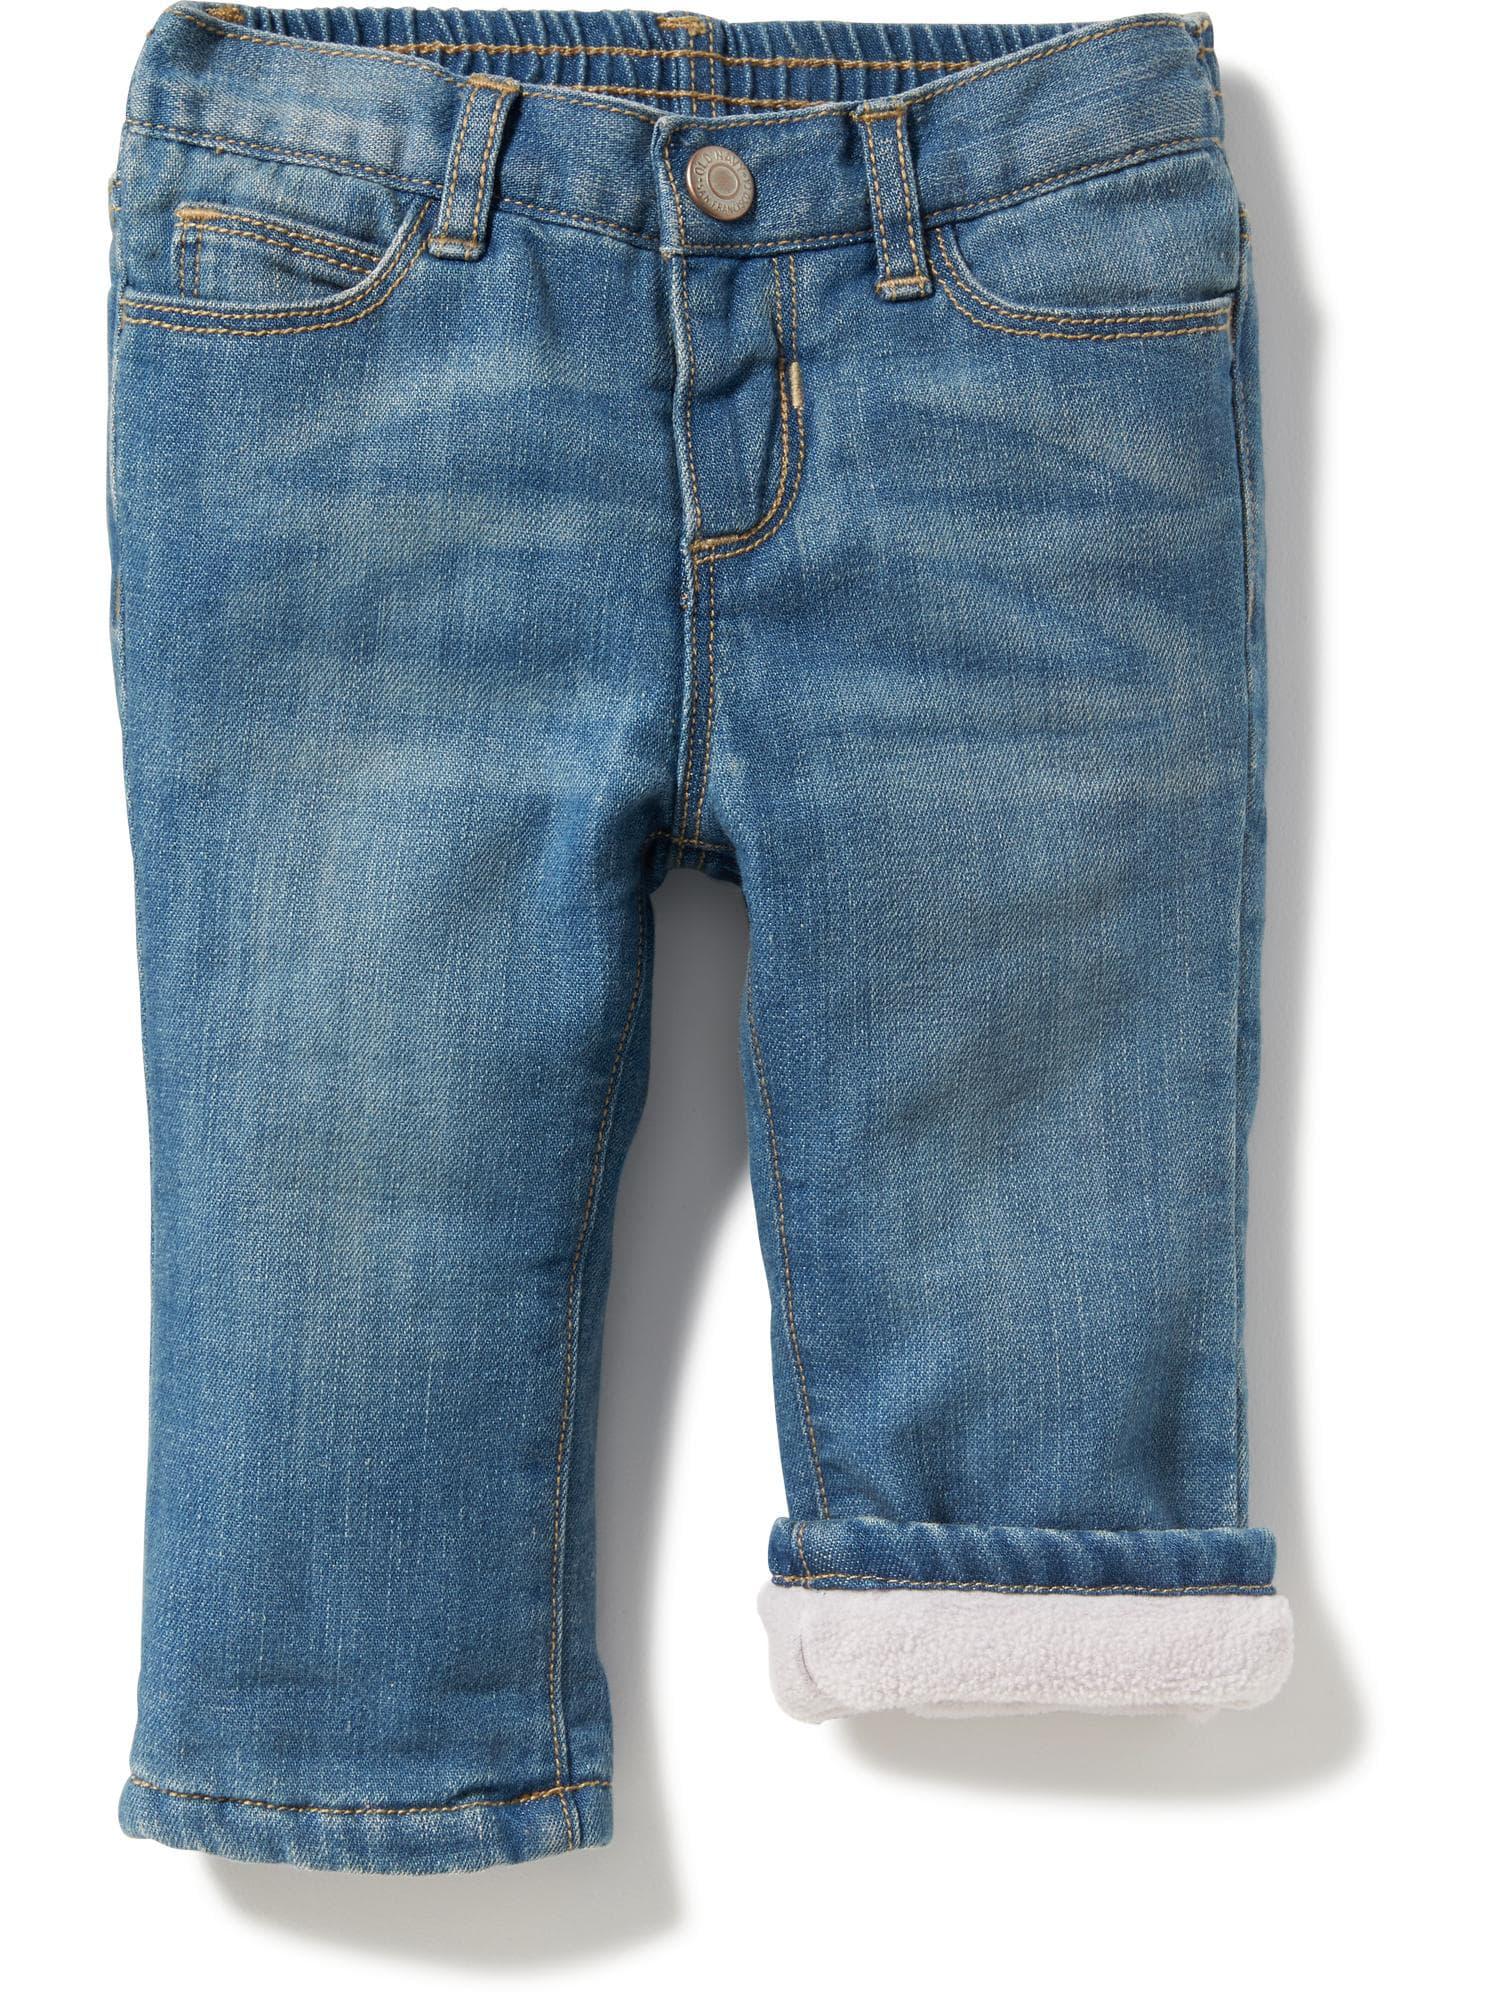 old navy fleece jeans